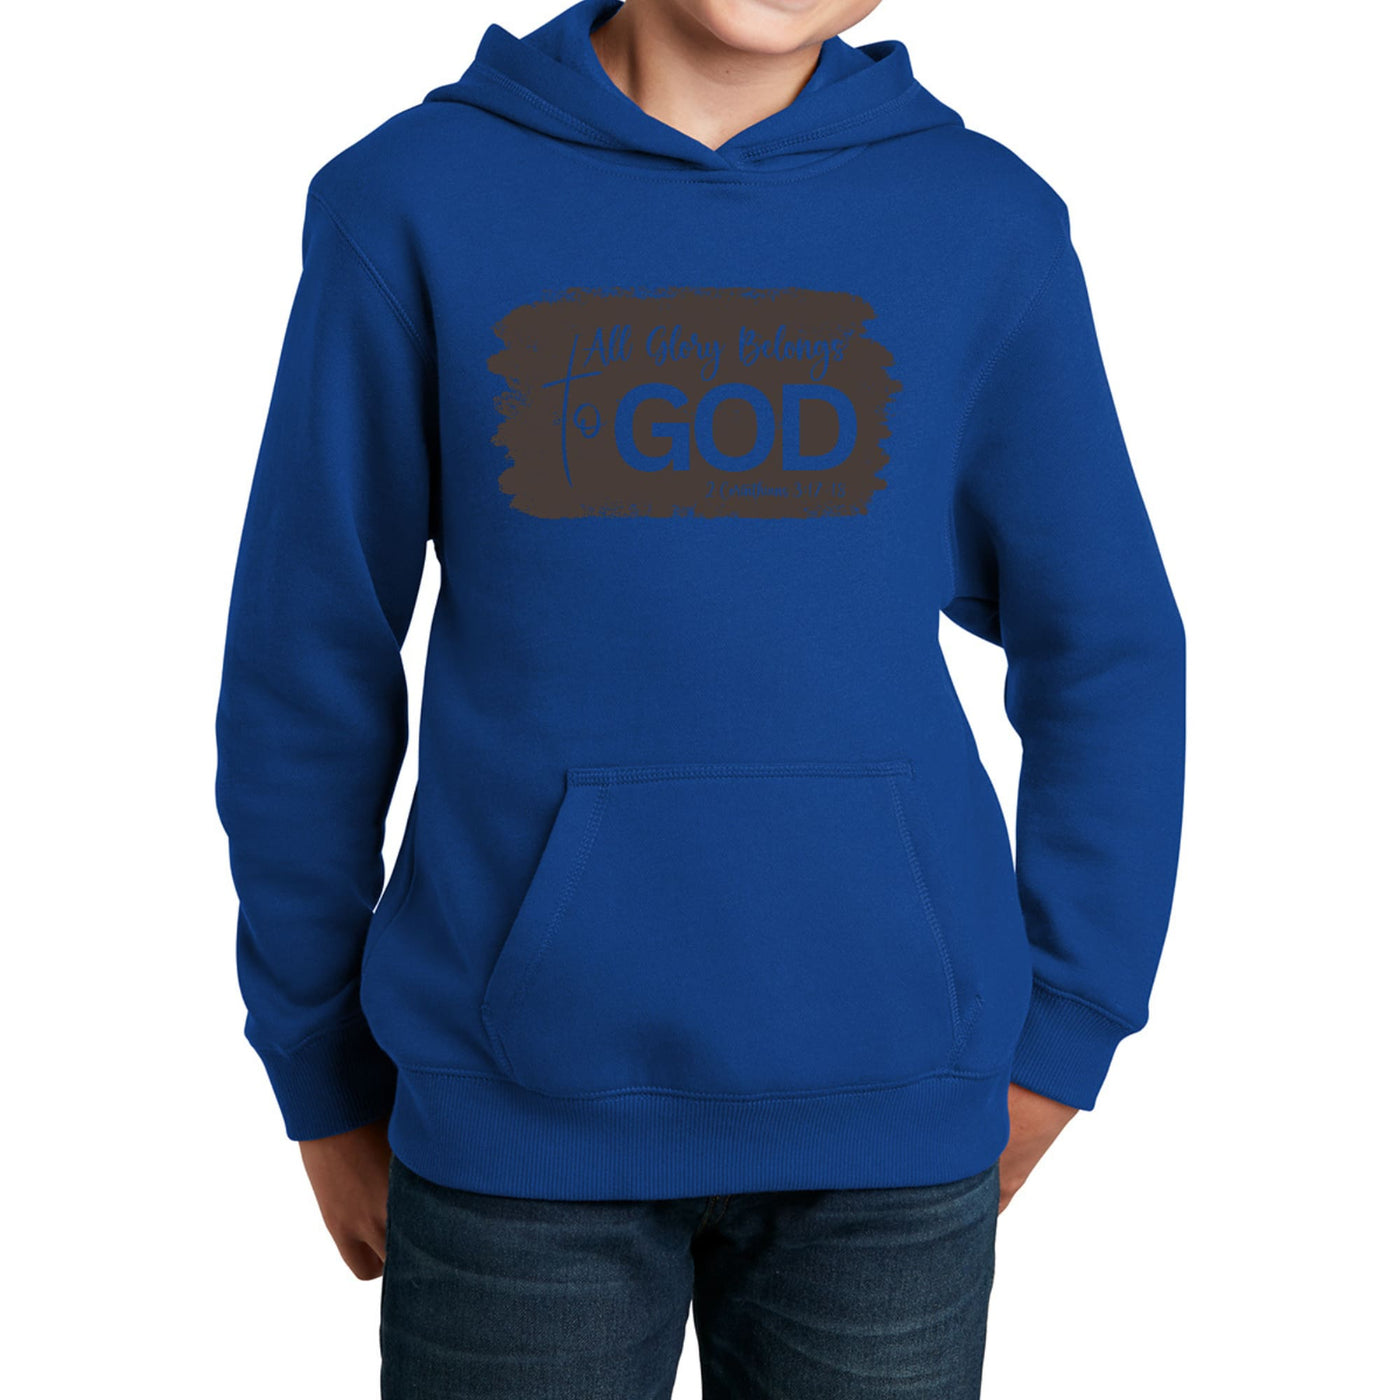 Youth Long Sleeve Hoodie All Glory Belongs To God Brown - Youth | Hoodies